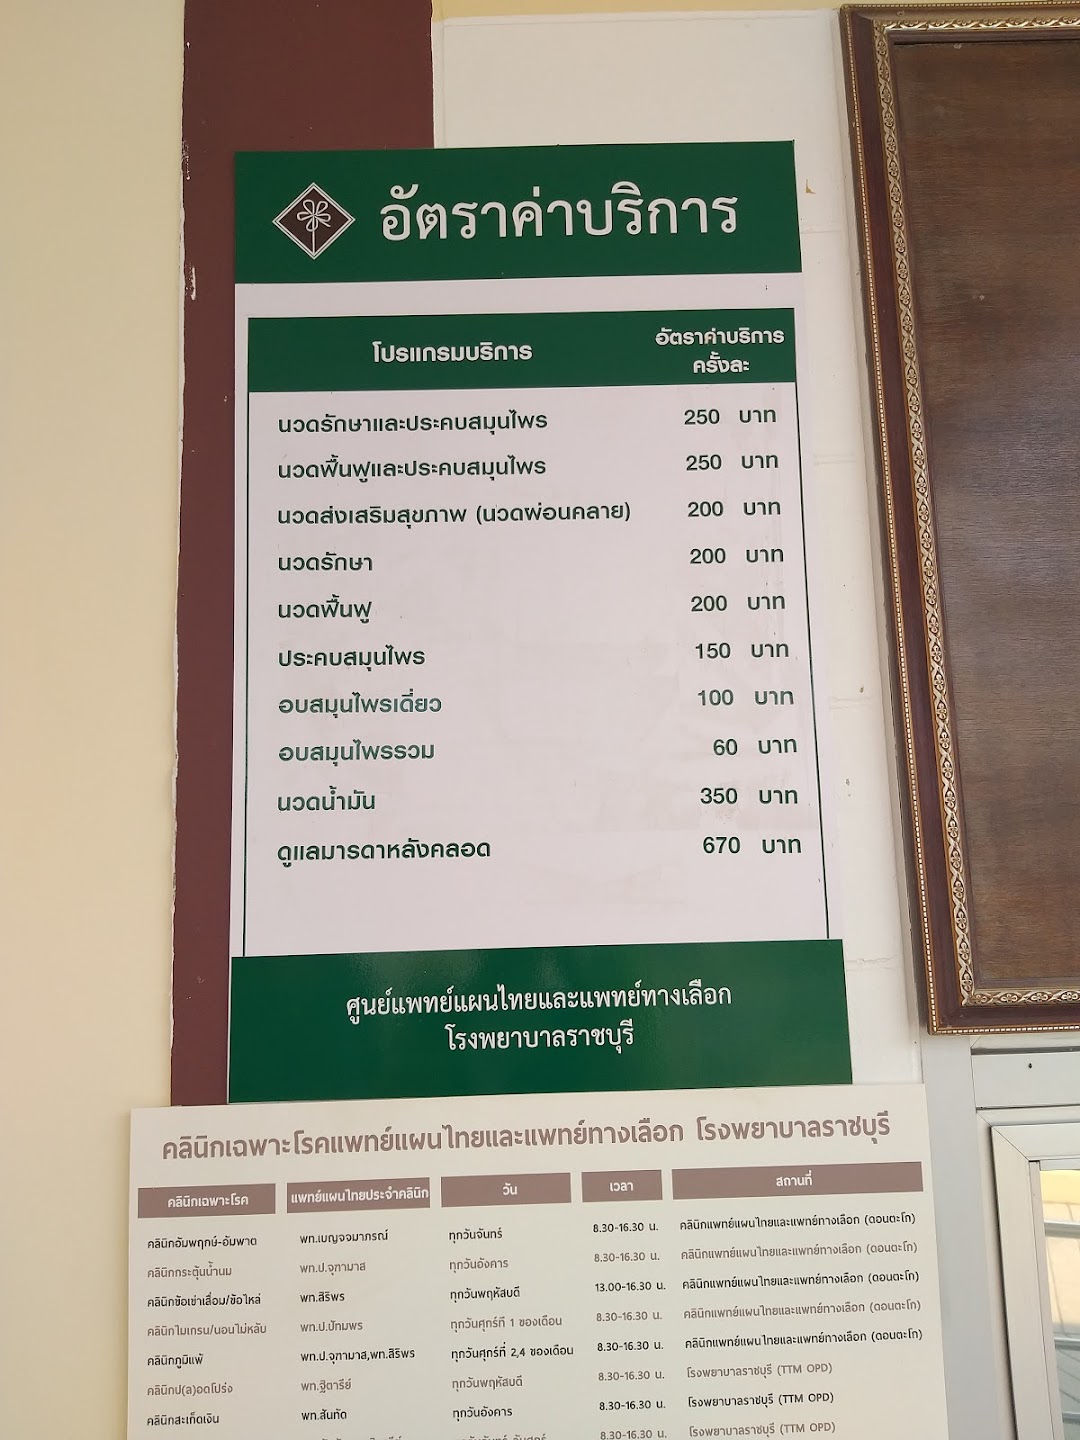 คลีนิคแพทย์แผนไทยและแพทย์ทางเลือก โรงพยาบาลราชบุรี